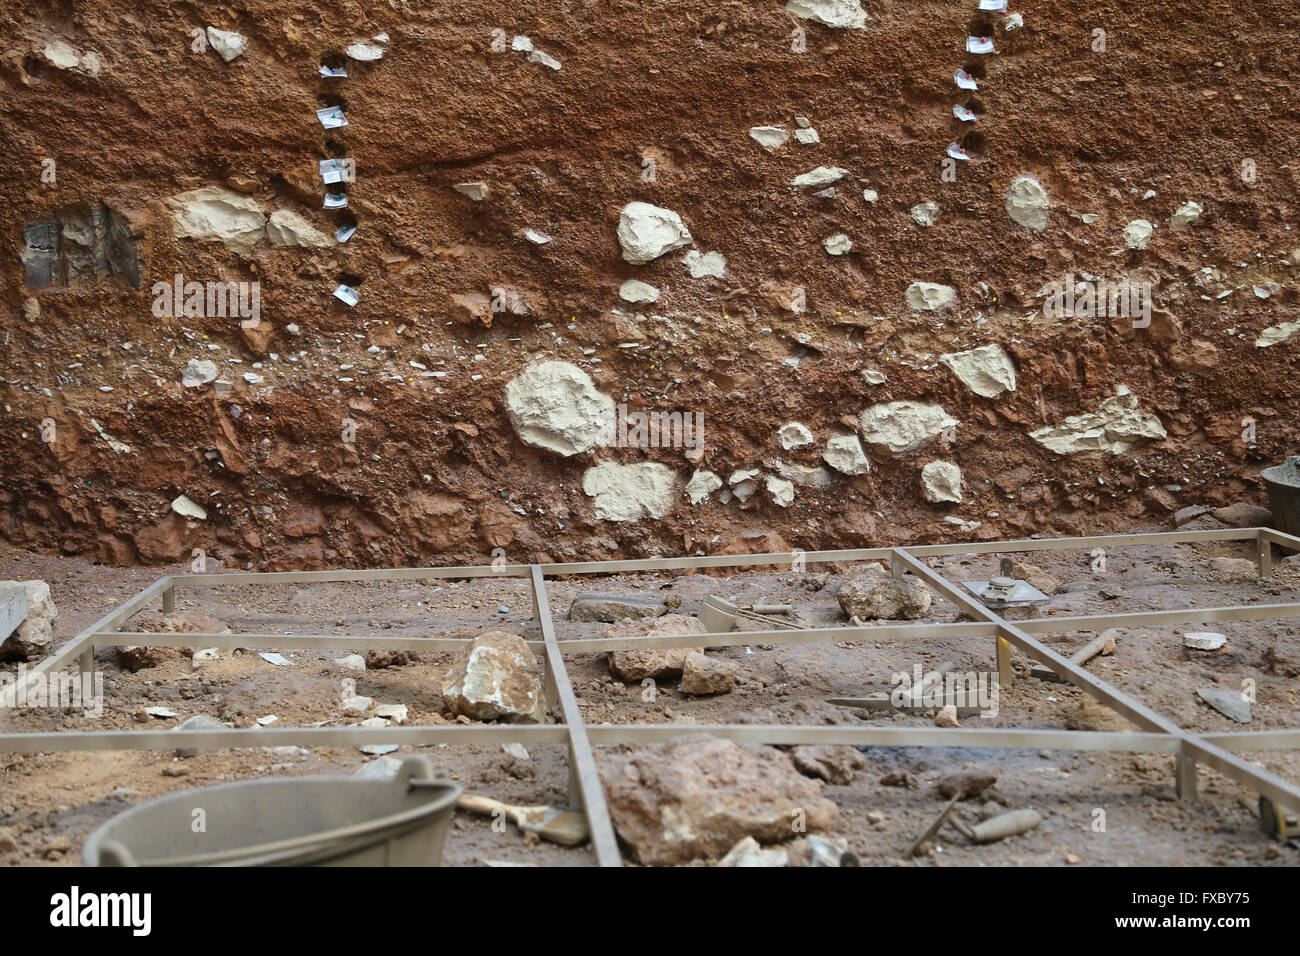 Archäologische Ausgrabung. Studieren Sie Materialien bleibt. Stratigraphie. Atapuerca. Burgos. Spanien. Stockfoto